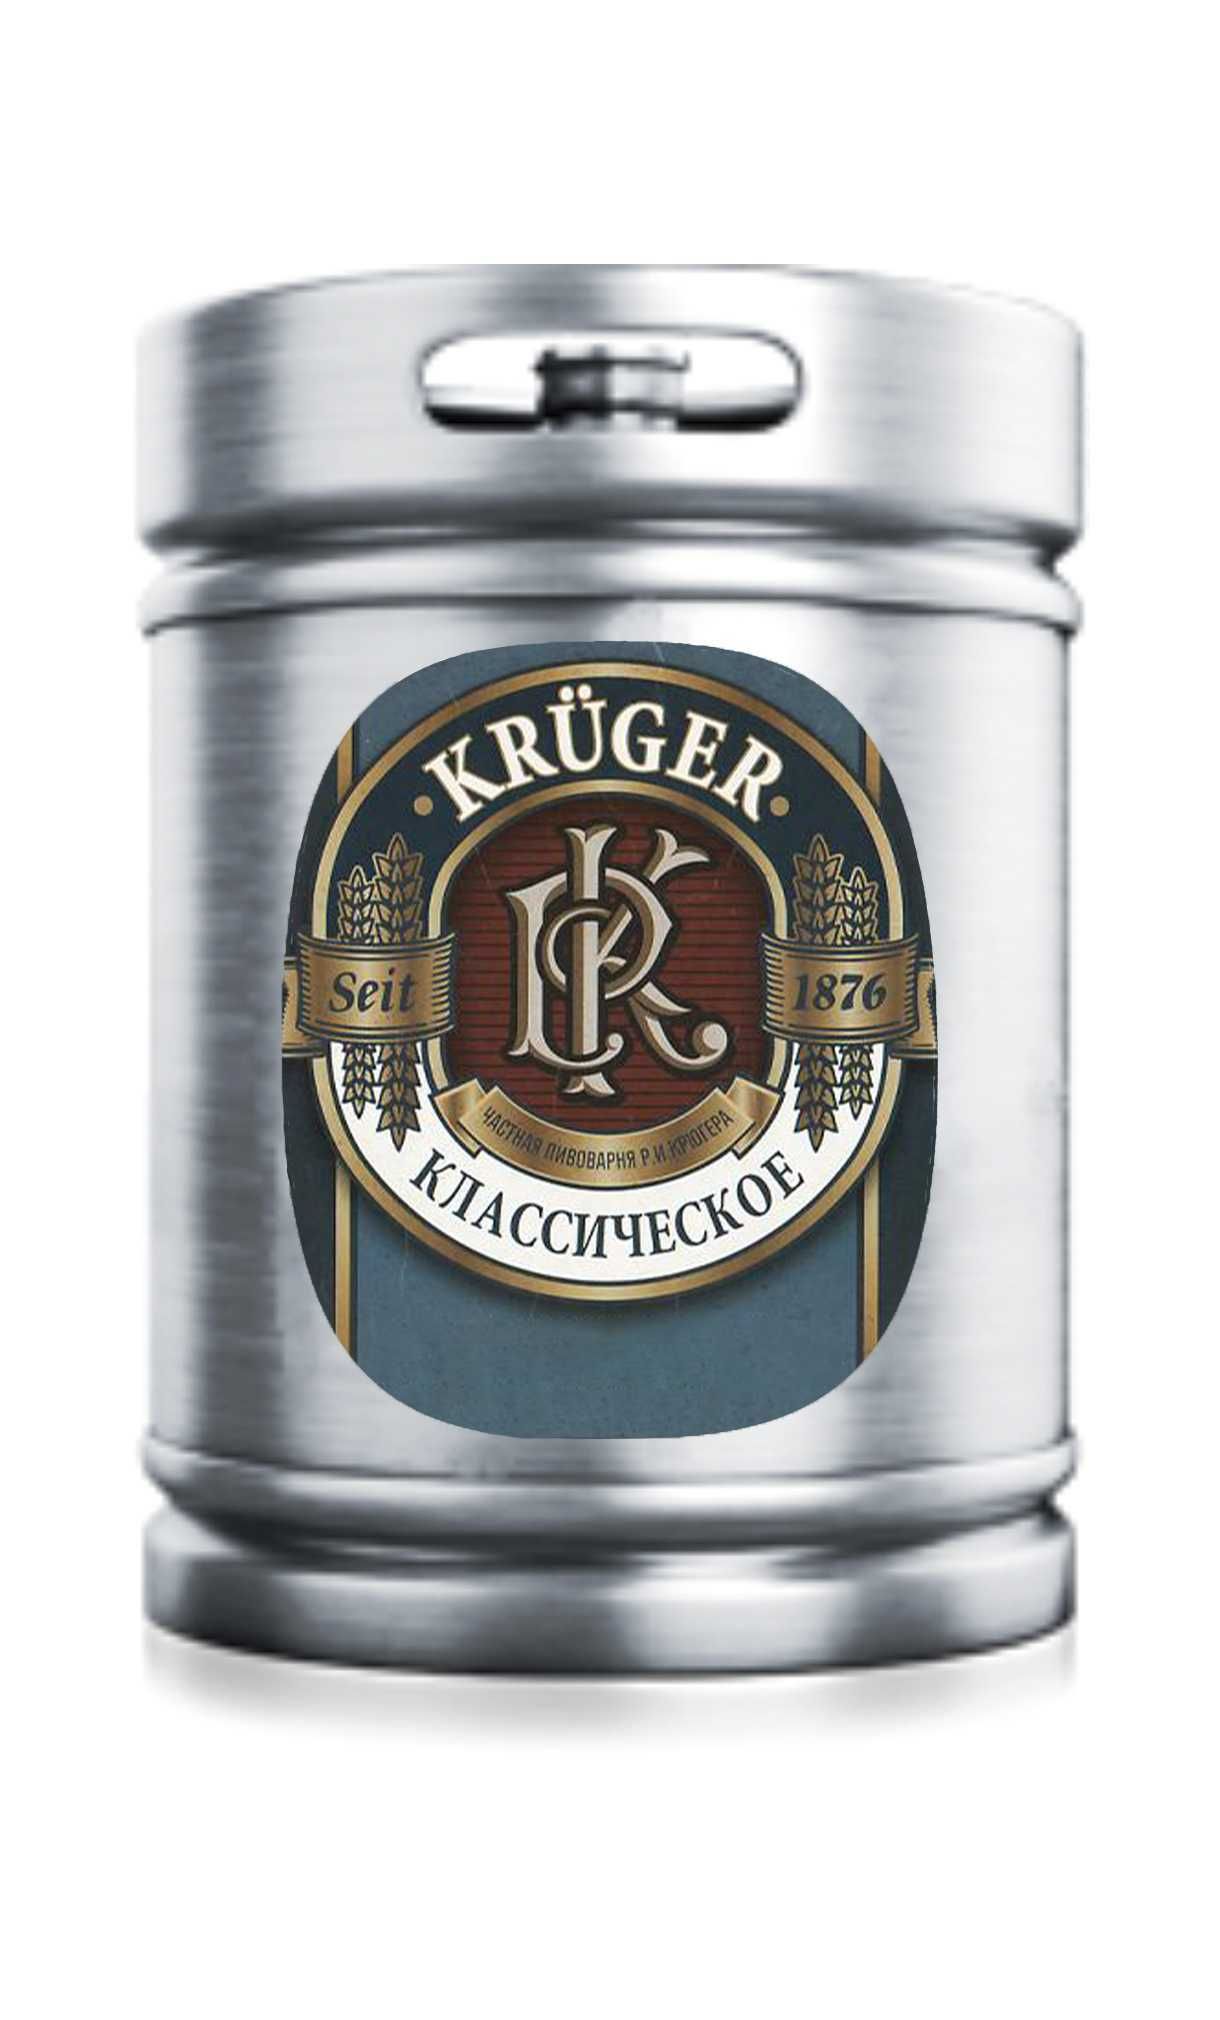 Пиво Крюгер классическое 5,0%